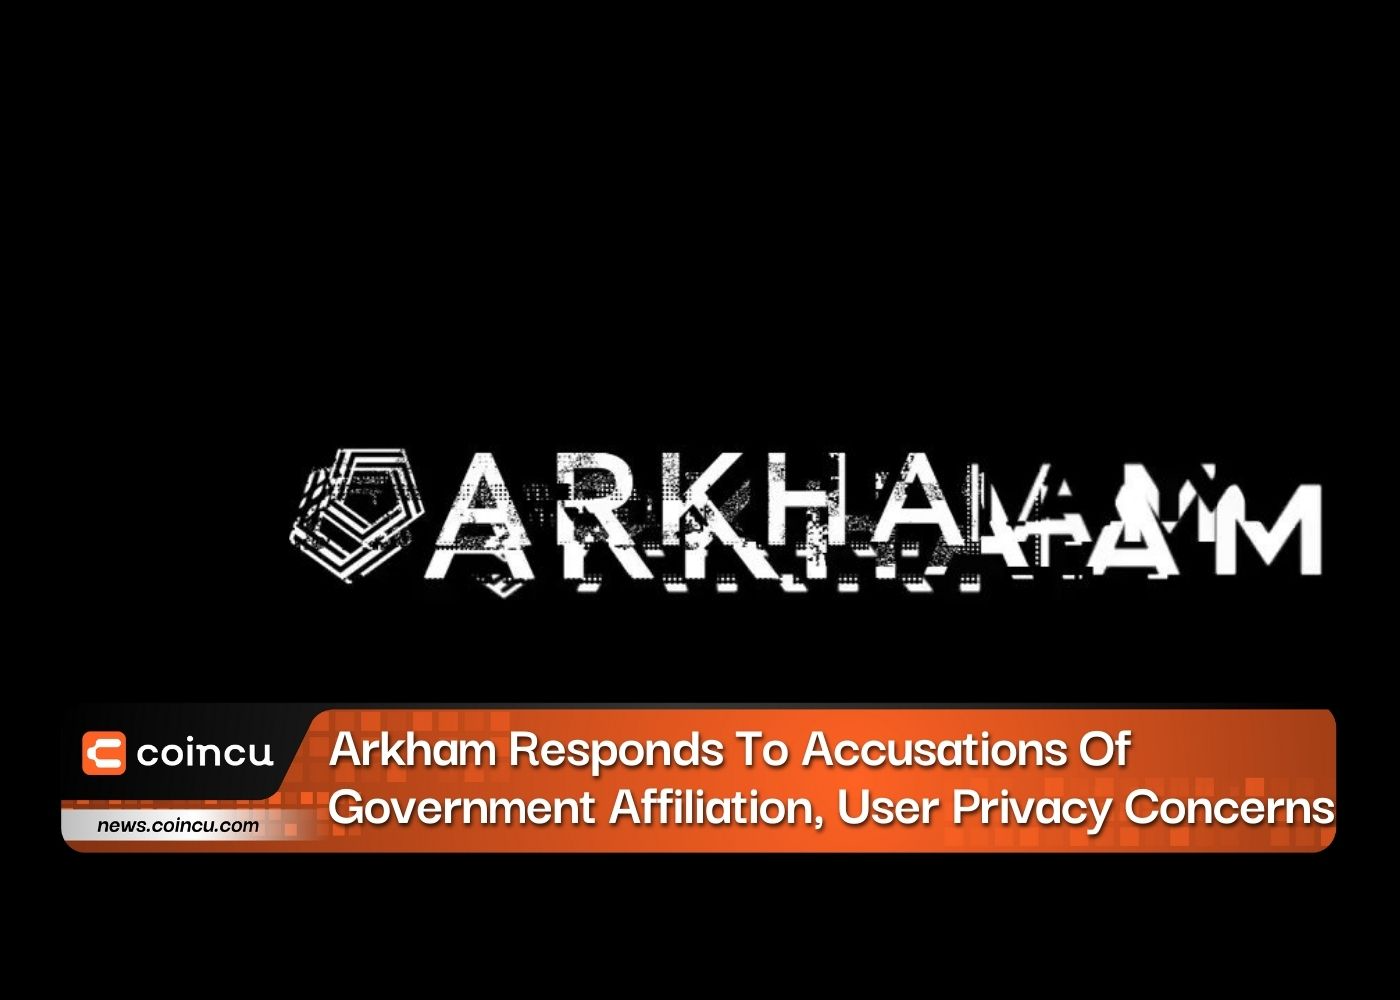 Arkham responde a las acusaciones de afiliación gubernamental y preocupaciones sobre la privacidad del usuario